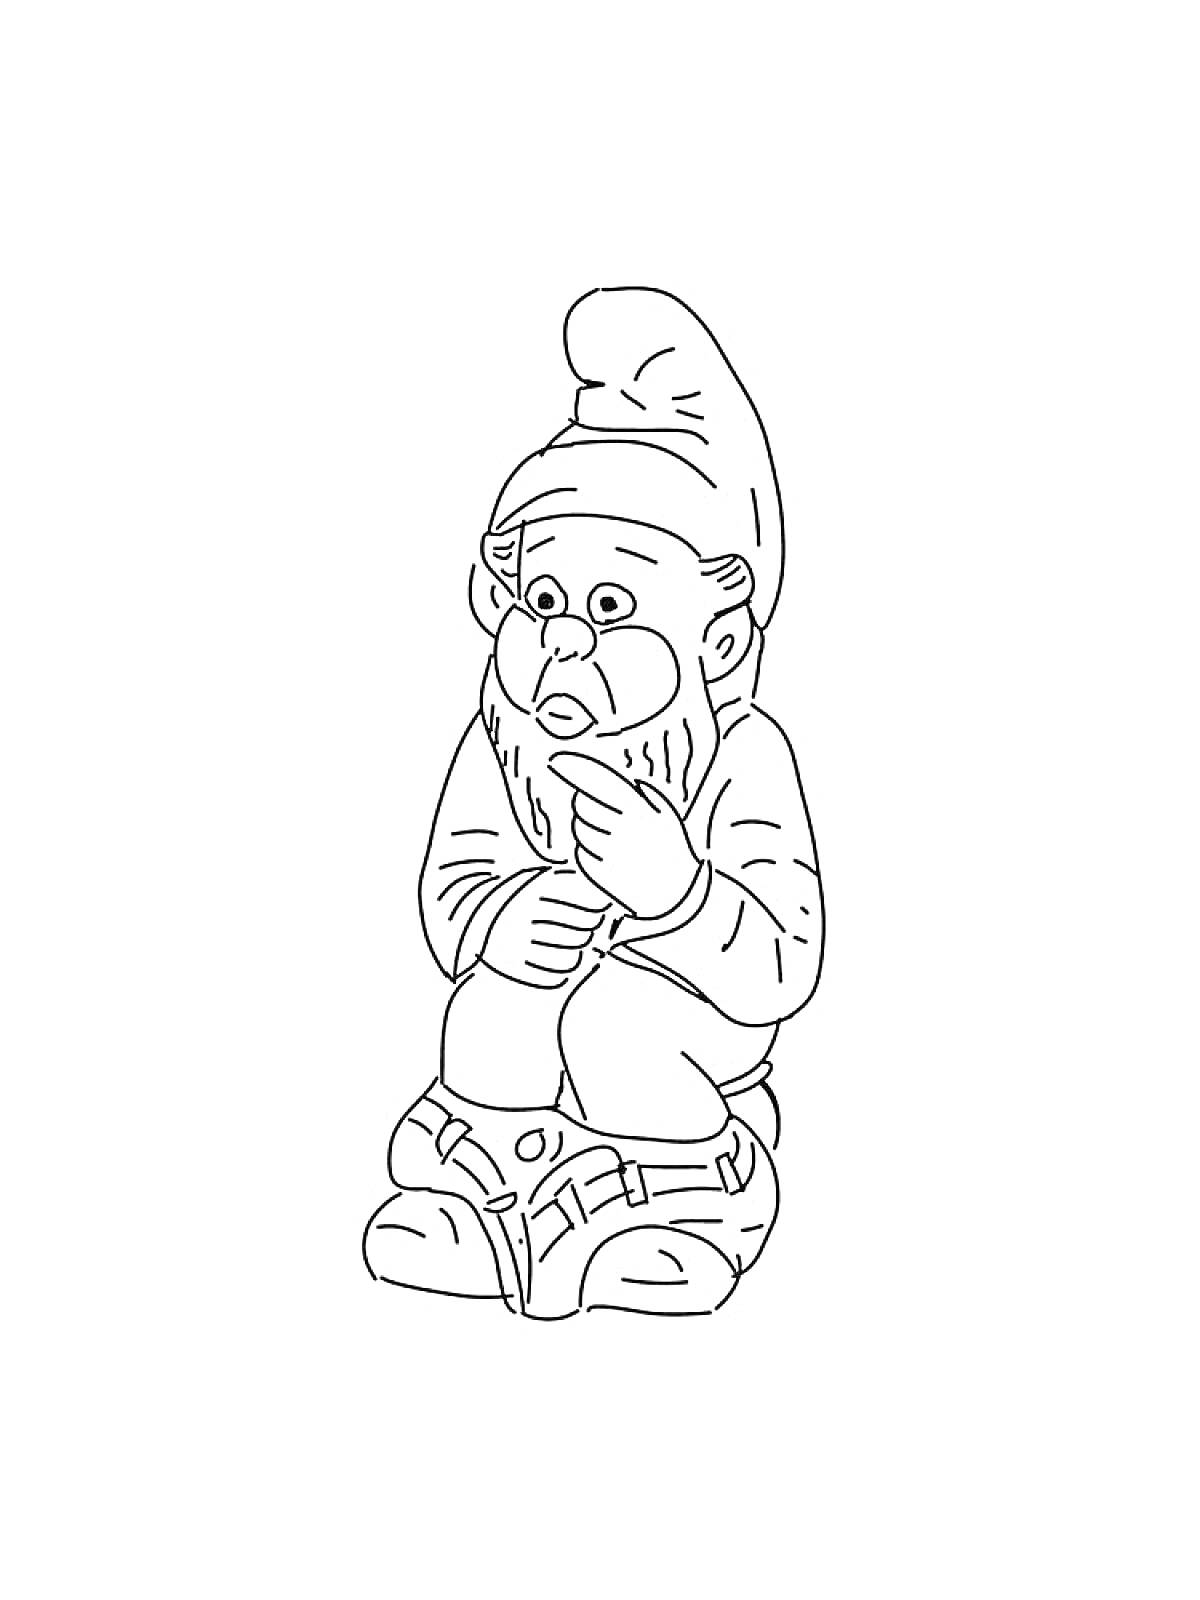 Раскраска Гномик в колпаке и с бородой, сидящий на земле, держащий пальцы у рта